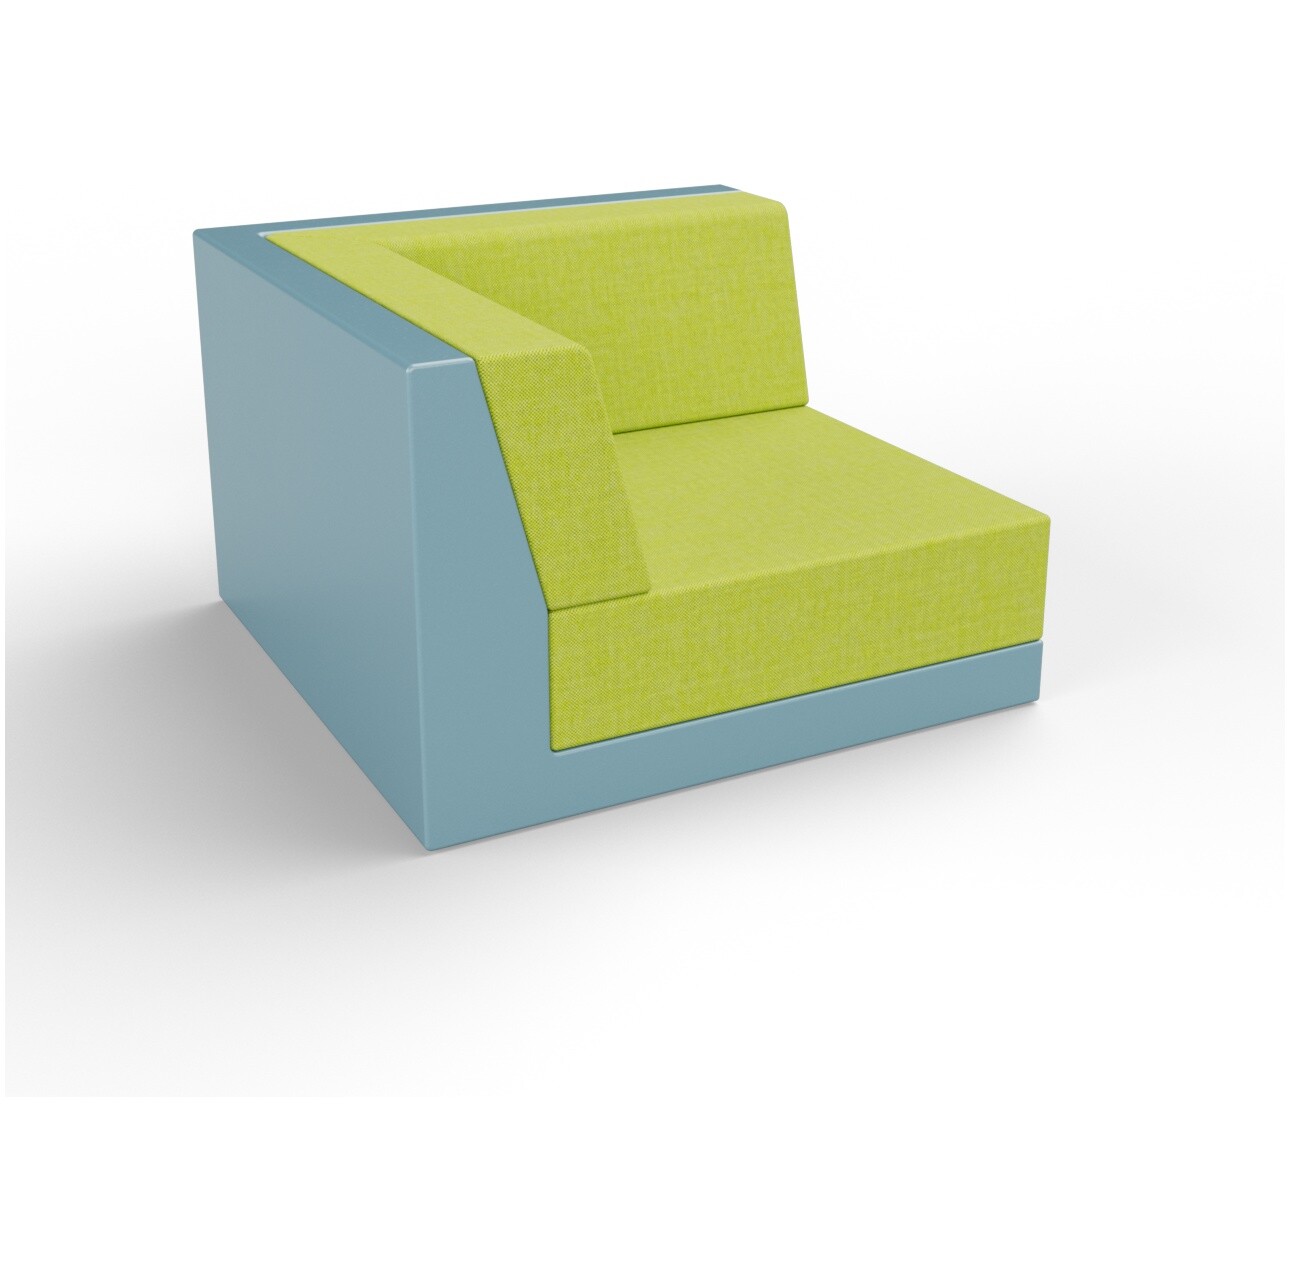 Модуль дивана угловой пластиковый с подушками бирюзовый, зеленый Quarter modular